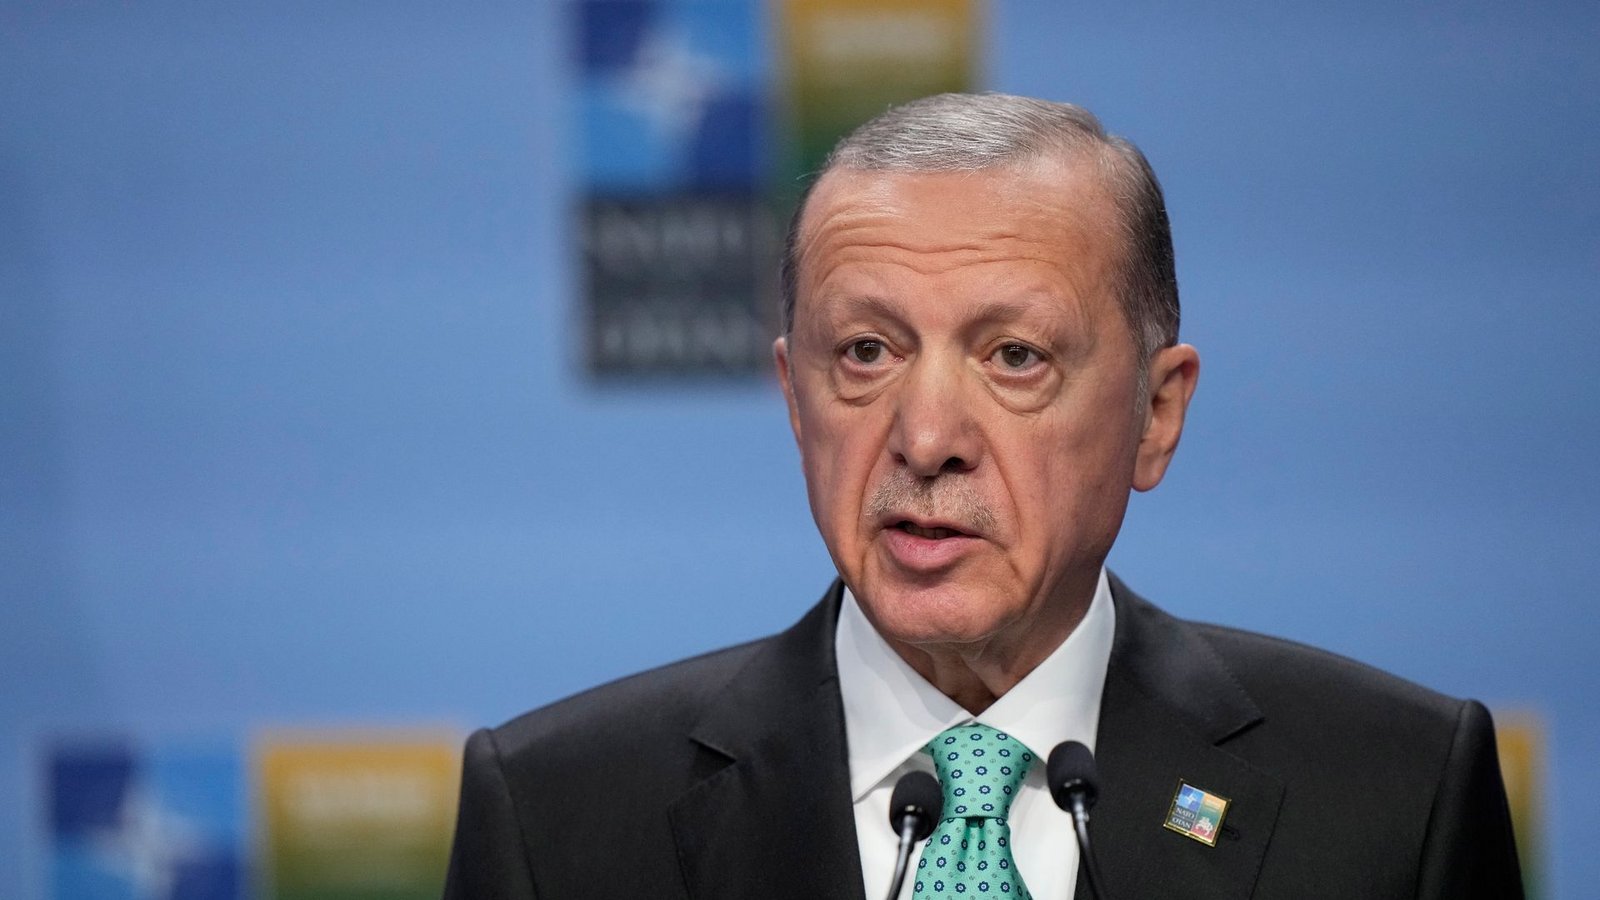 Der türkische Präsident Recep Tayyip Erdogan friert laut einem Bericht den Handel mit Israel ein.Foto: Pavel Golovkin/AP/dpa